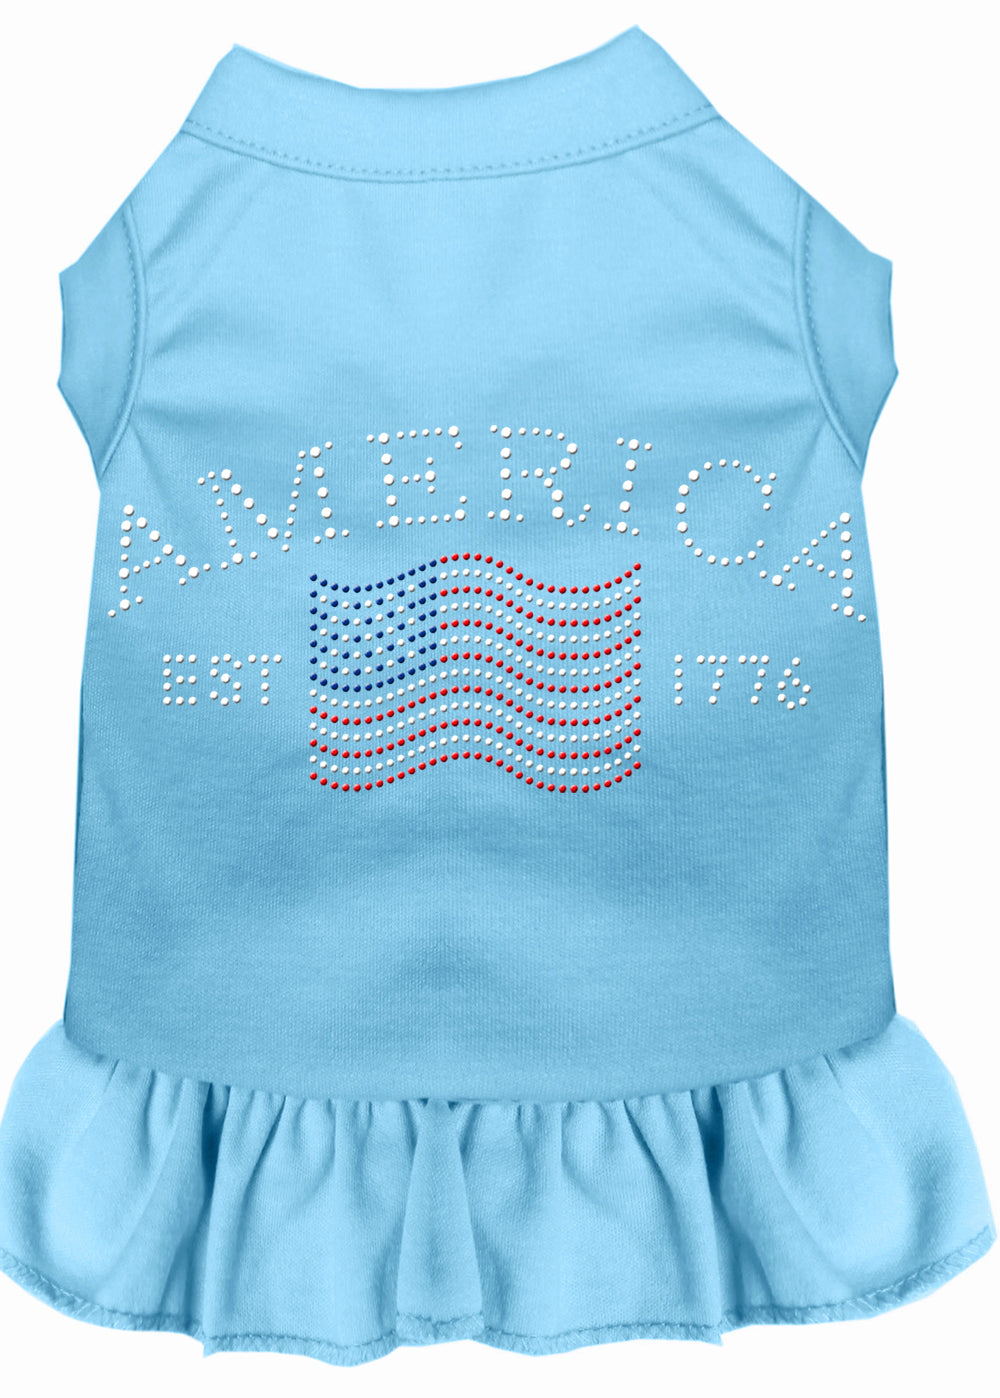 Classic America Rhinestone Dress Baby Blue Sm GreatEagleInc